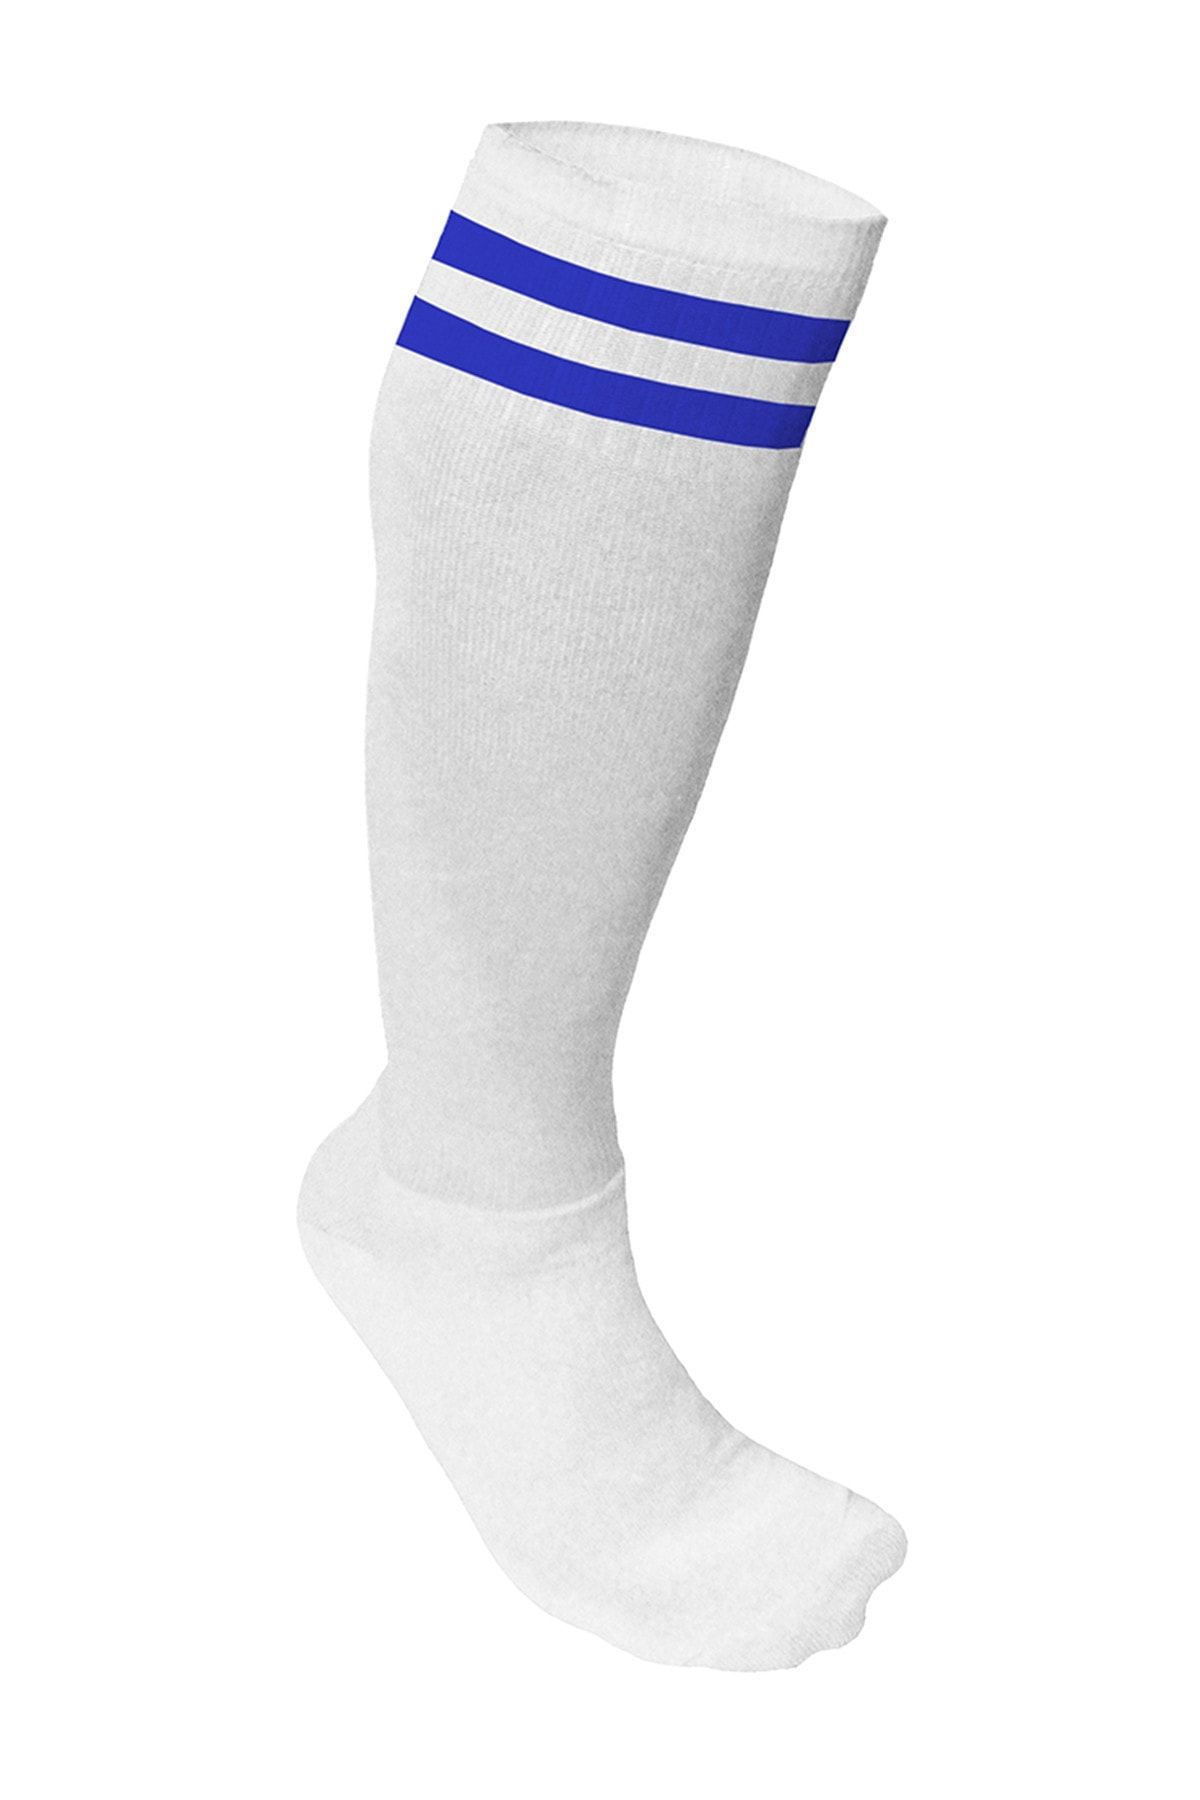 Nacar Süper Futbol Tozluğu-çorabı Beyaz Mavi